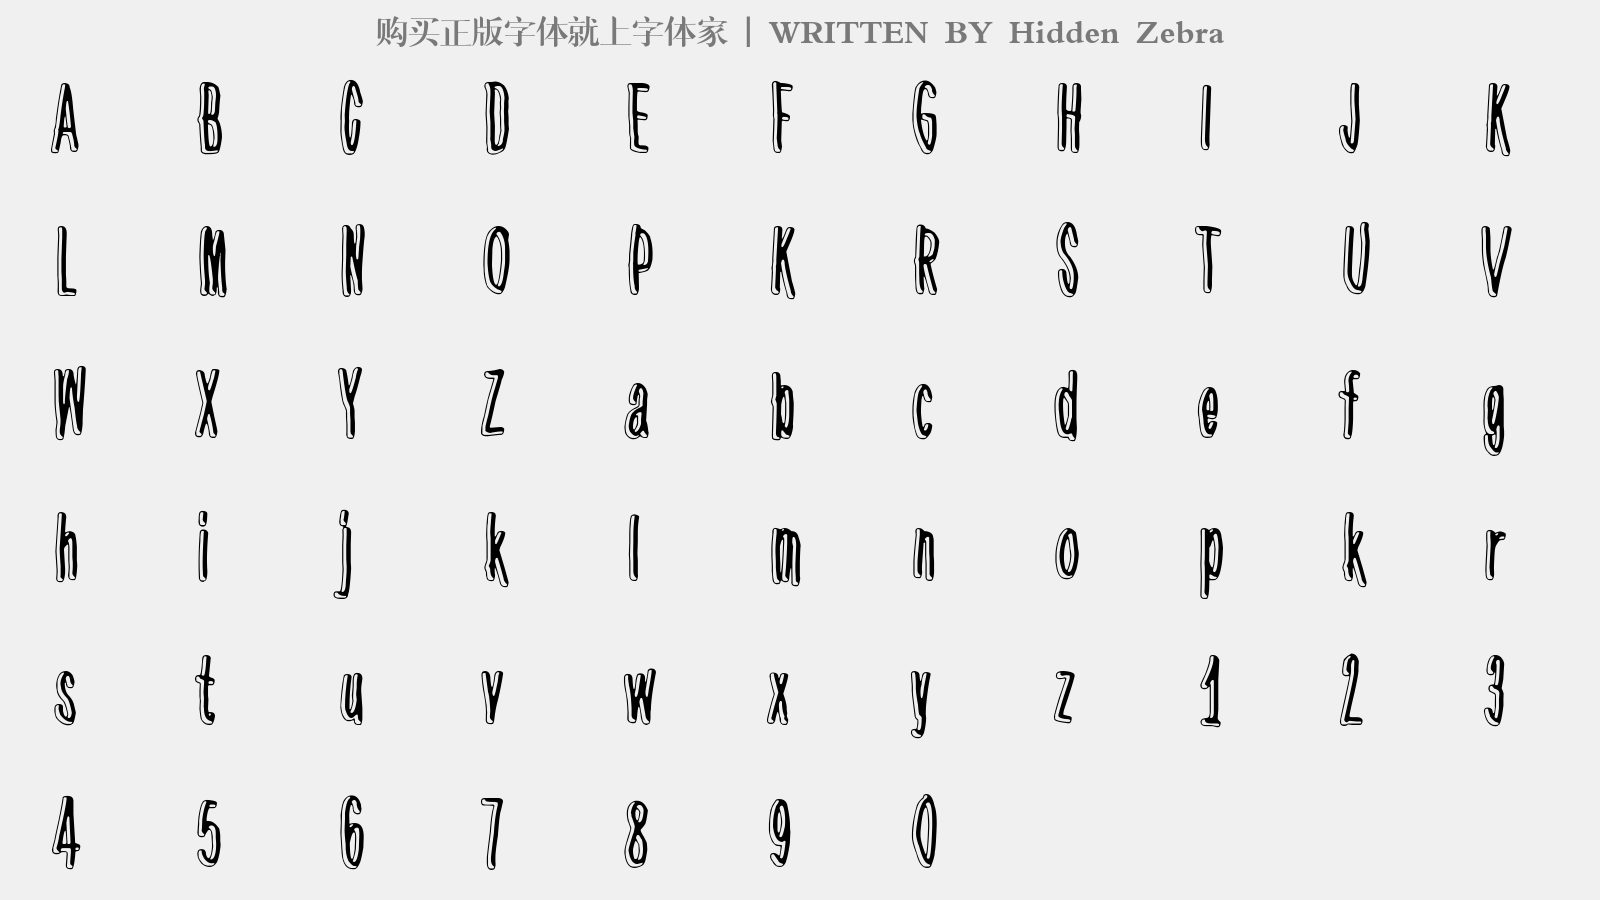 Hidden Zebra - 大写字母/小写字母/数字